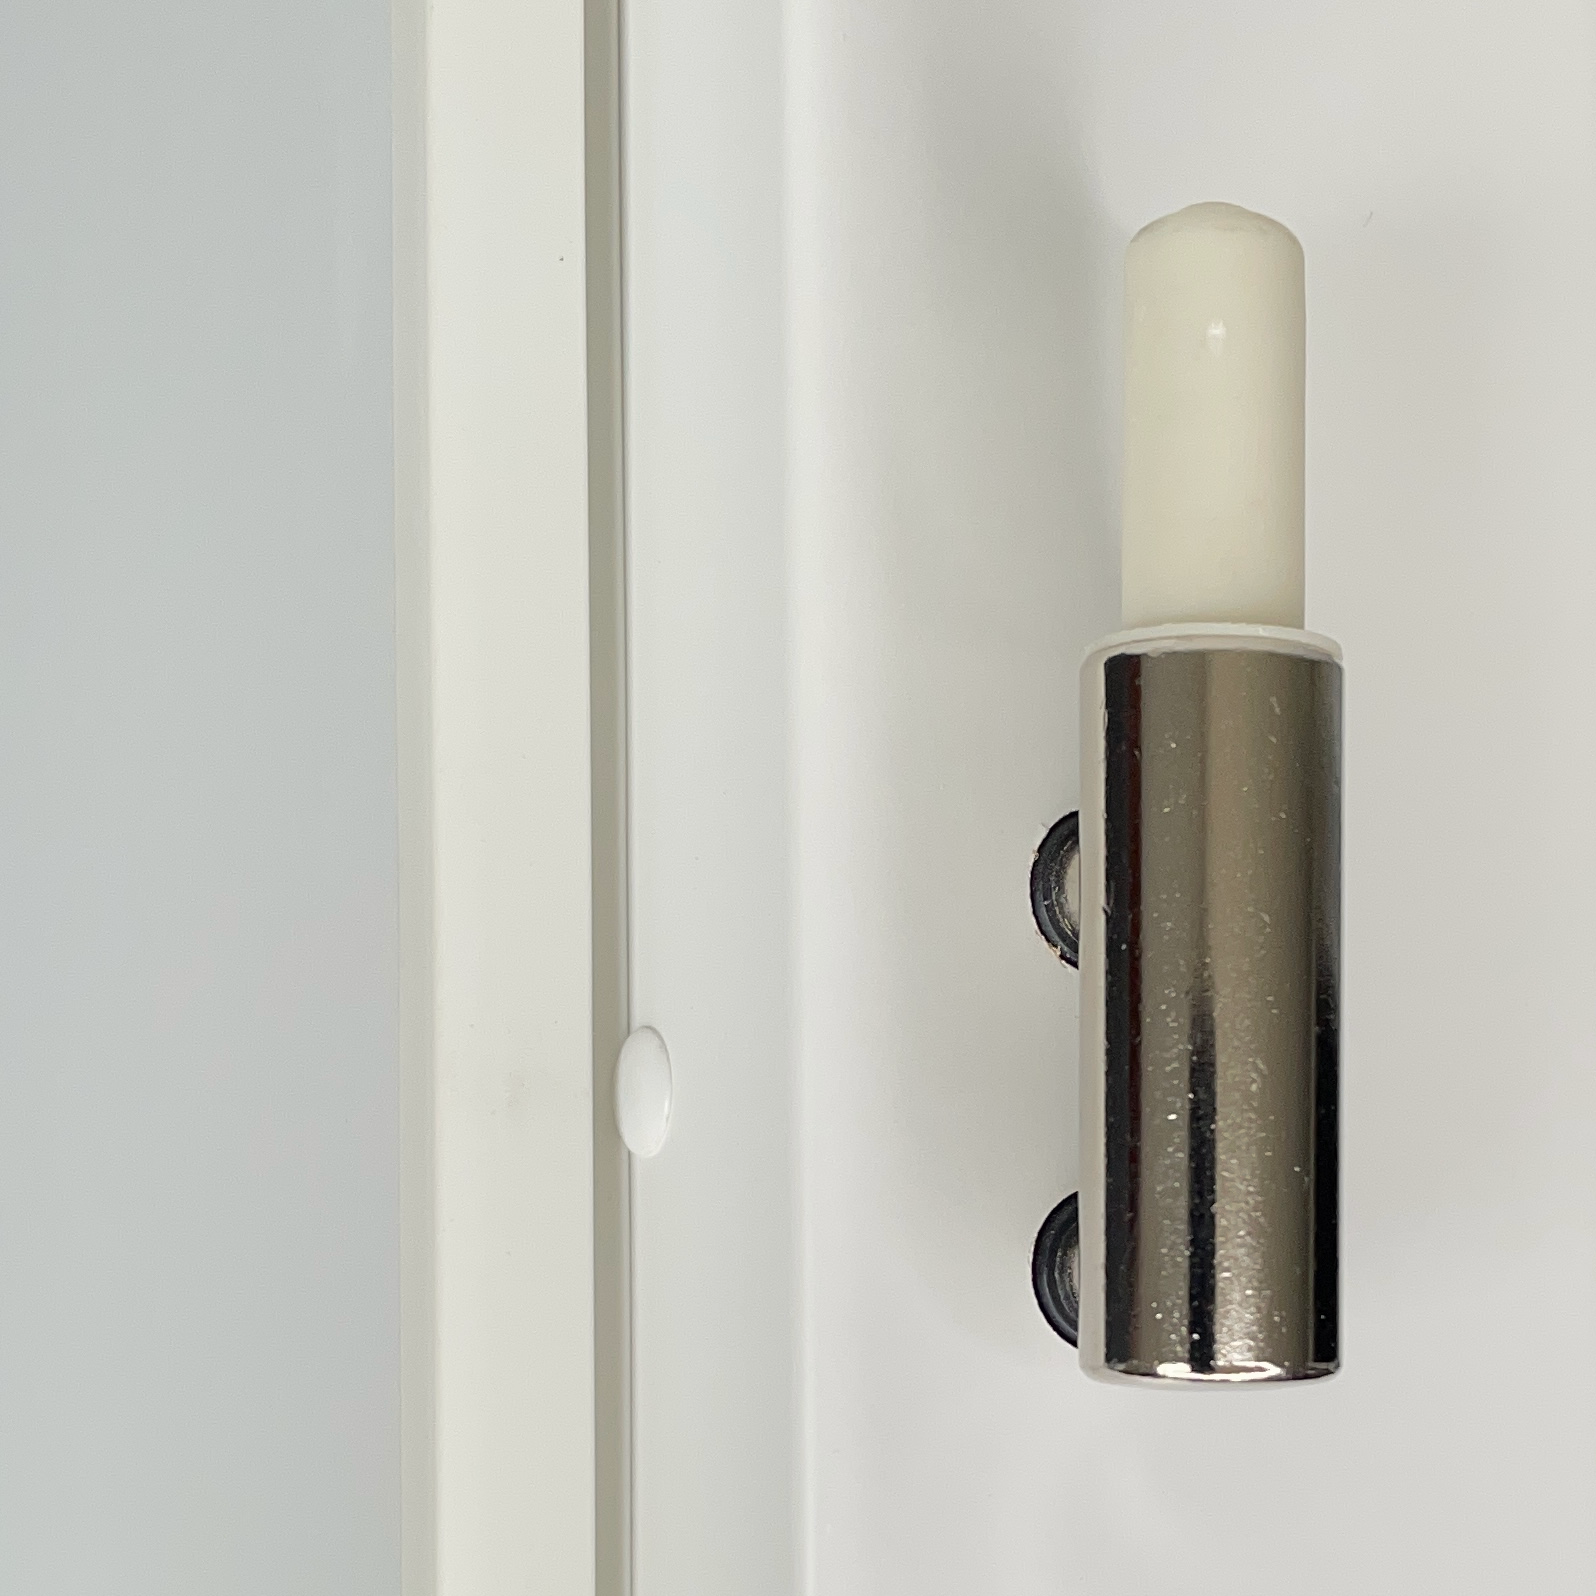 Zimmertür mit Zarge und Lichtausschnitt soft-weiß 4 breite Rillen Eckkante - Modell Designtür QB41LAB